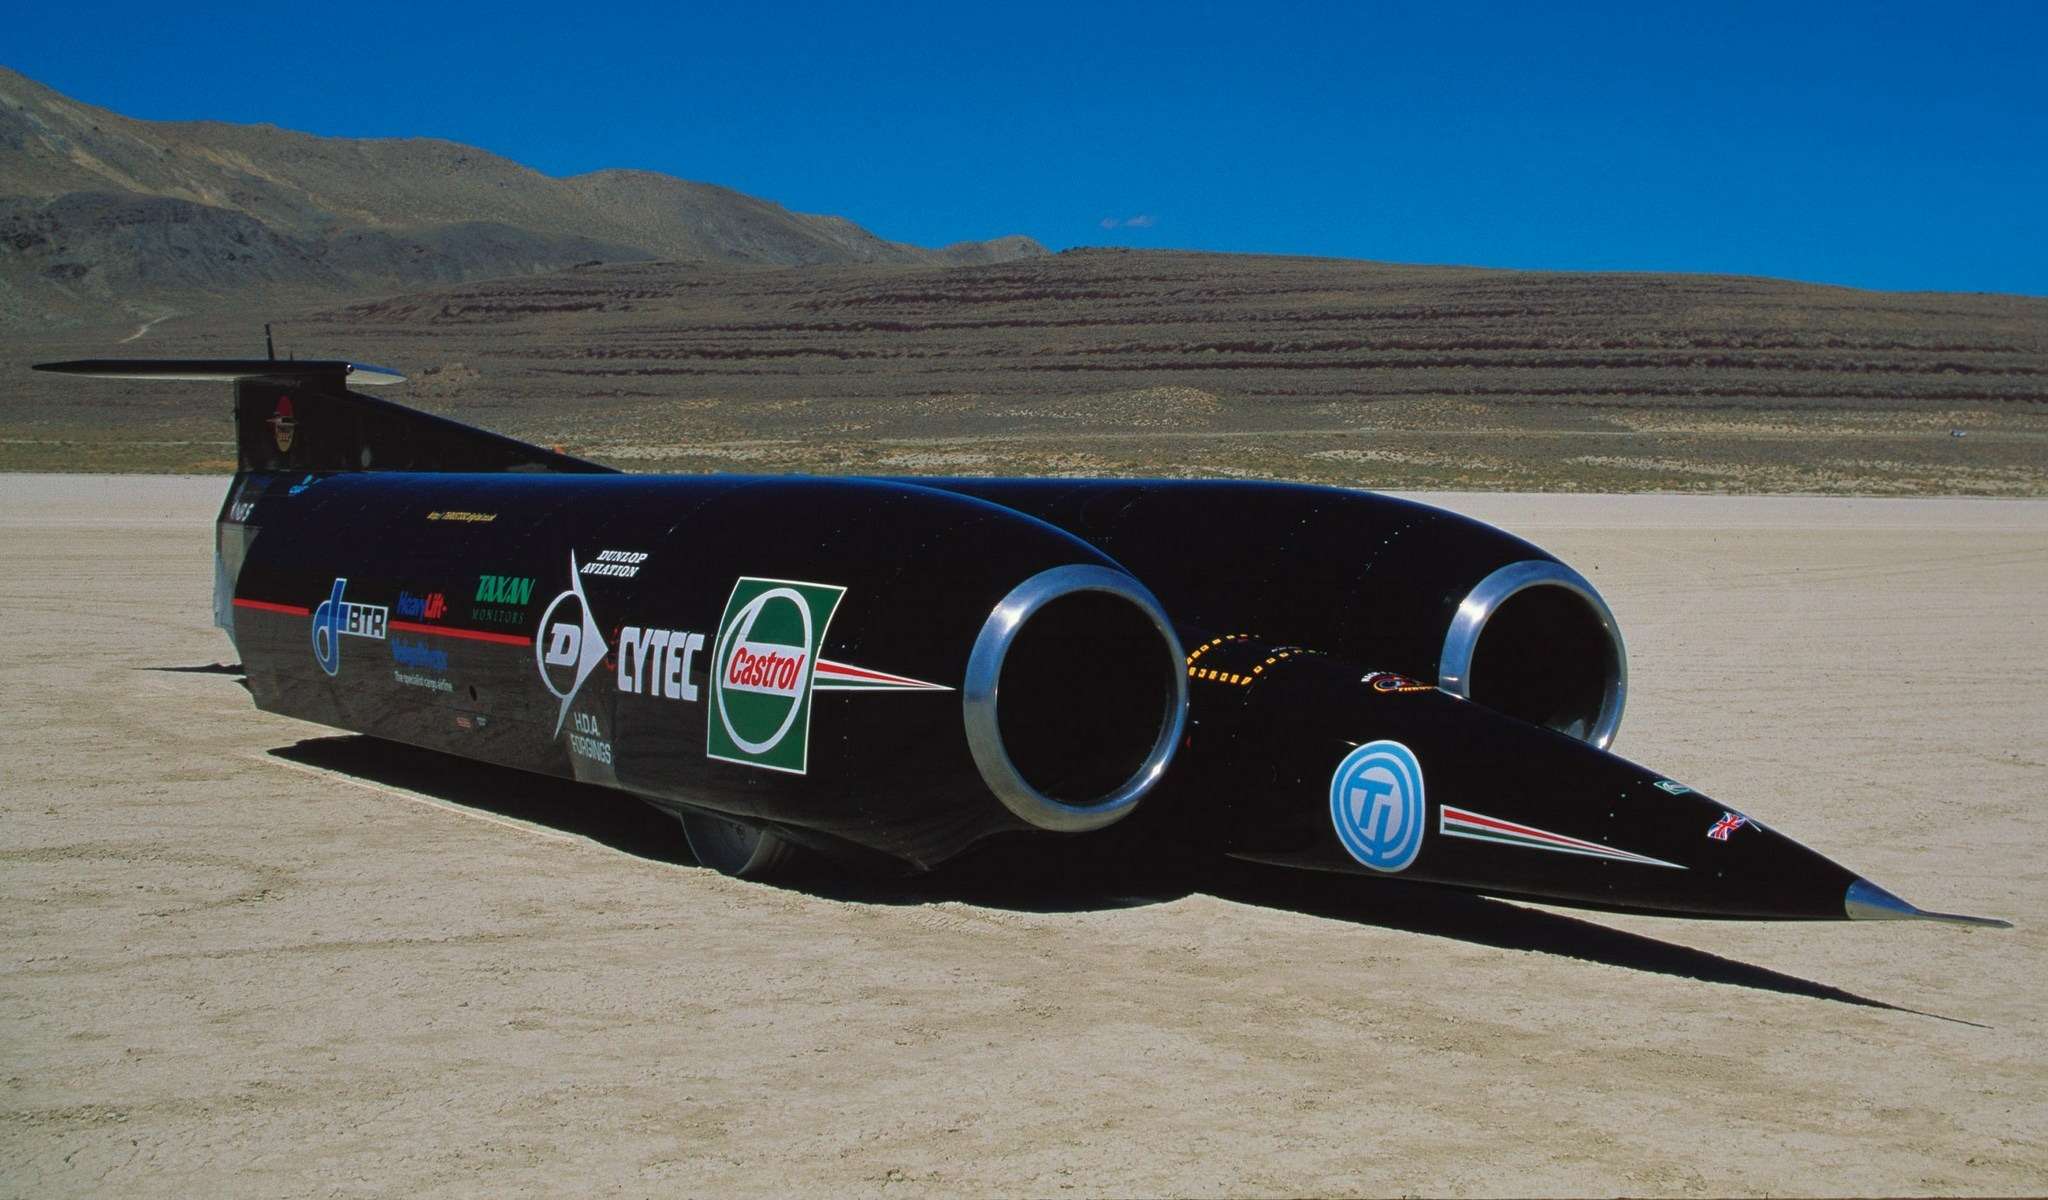 Это автомобиль Thrust SSC, на котором 15 октября 1997 года Энди Грин установил действующий мировой рекорд наземной скорости на пилотируемом транспортном средстве – 1227,985 км/ч.